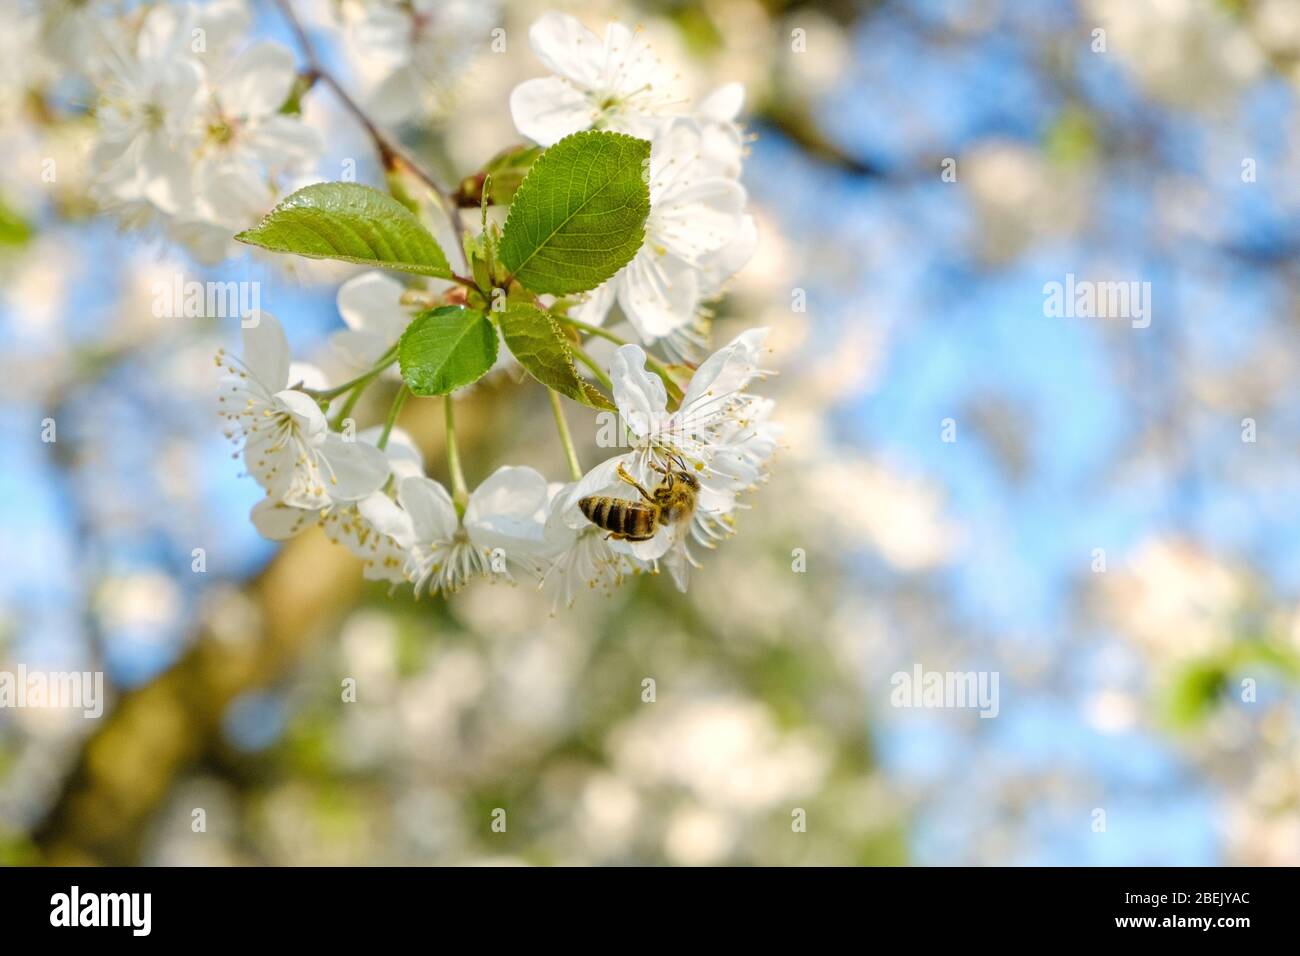 Eine Honigbiene, die auf einer schönen weißen Kirsche sitzt, blüht vor einem blauen Himmel mit strahlenden Farben und einer kurzen Schärfentiefe Stockfoto